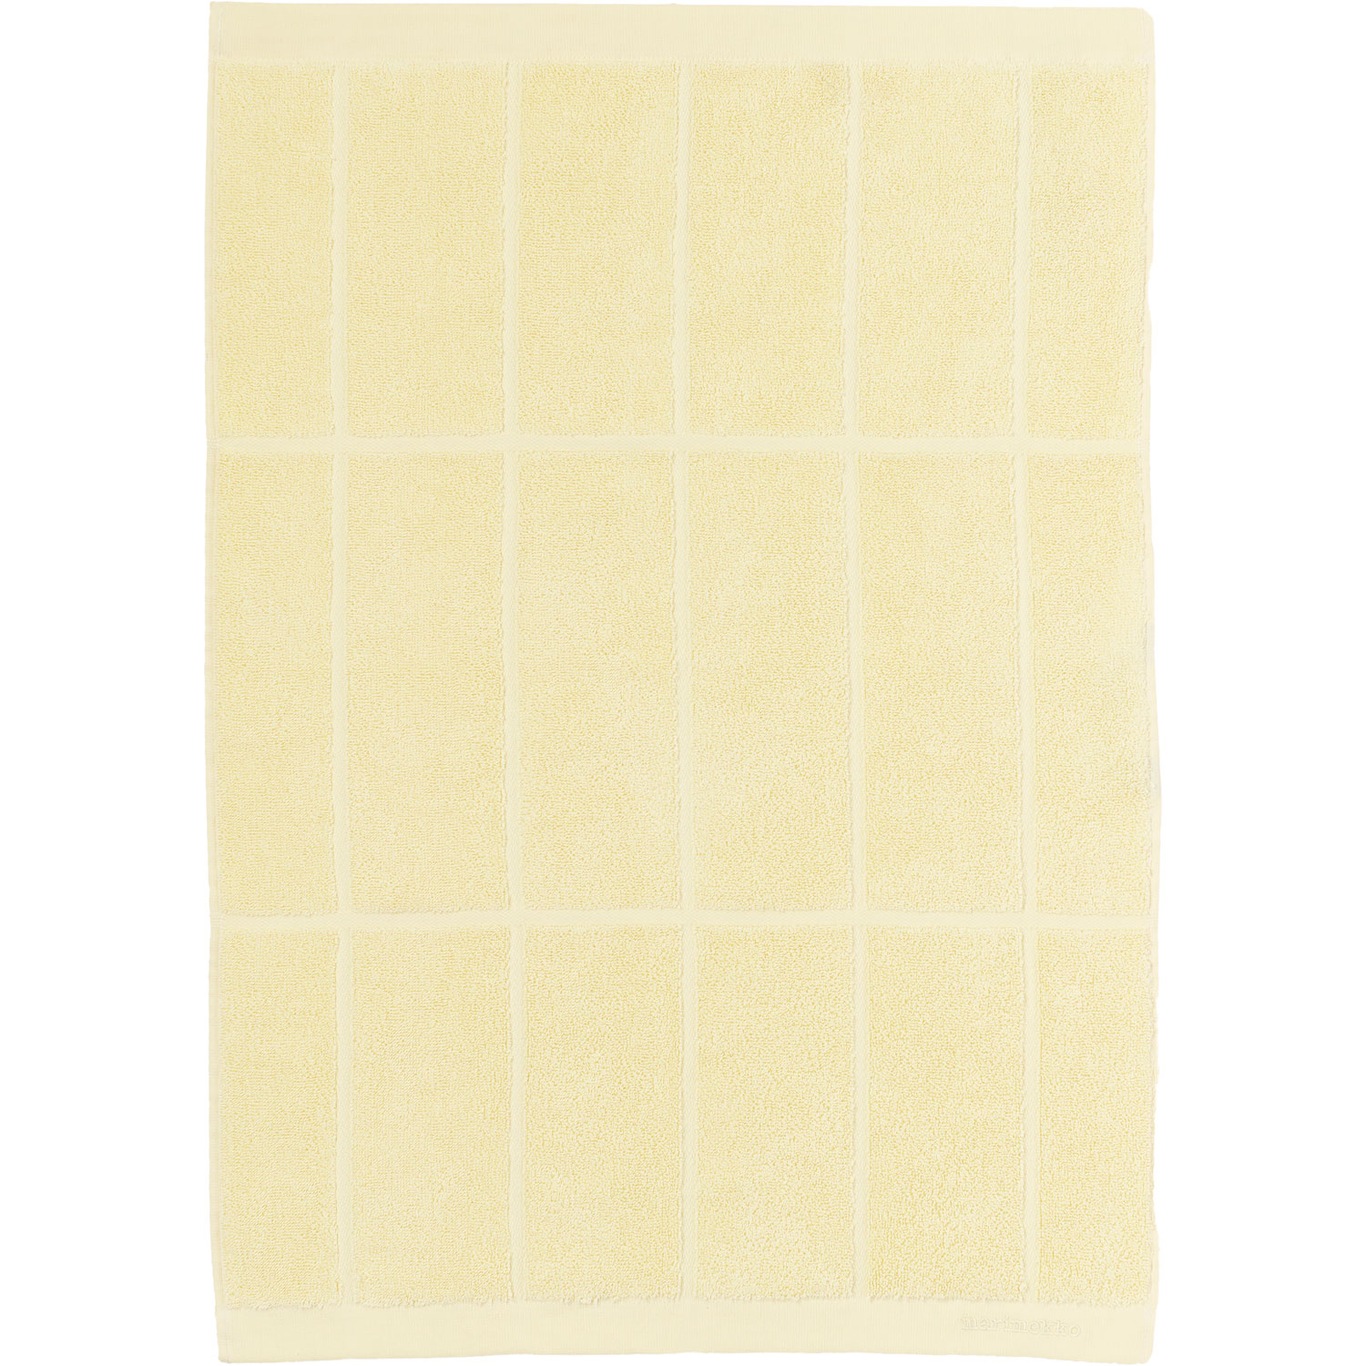 Tiiliskivi Handtuch 50x70 cm, Butter Yellow